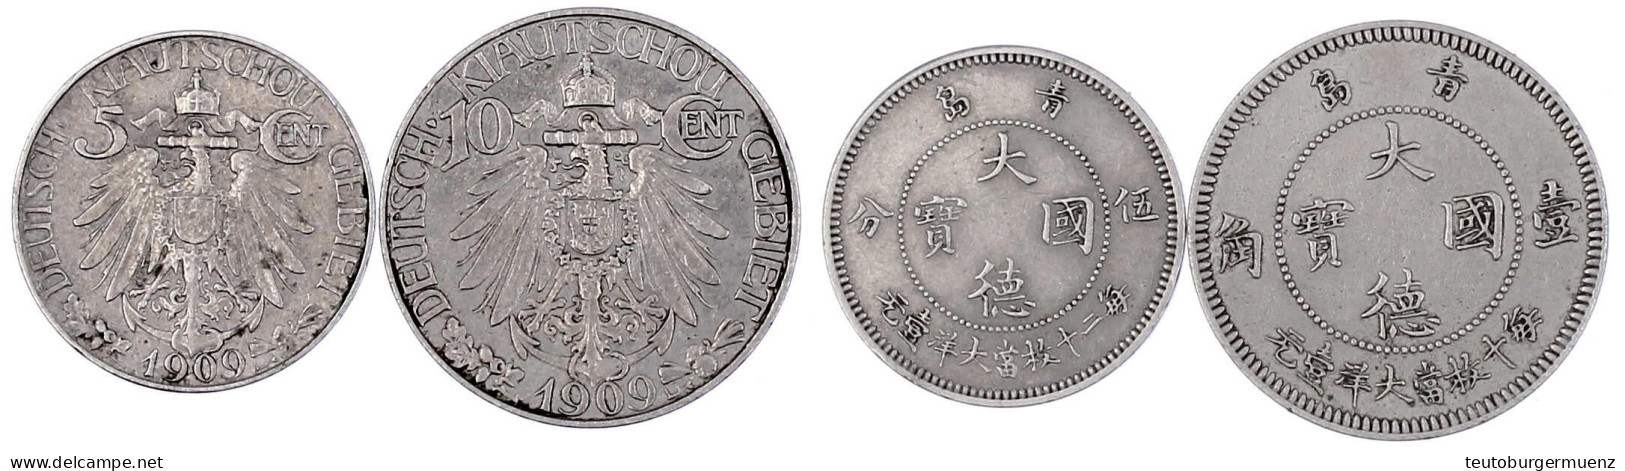 2 Münzen: 5 Cent Und 10 Cent 1909. Beide Sehr Schön/vorzüglich. Jaeger 729, 730. - China